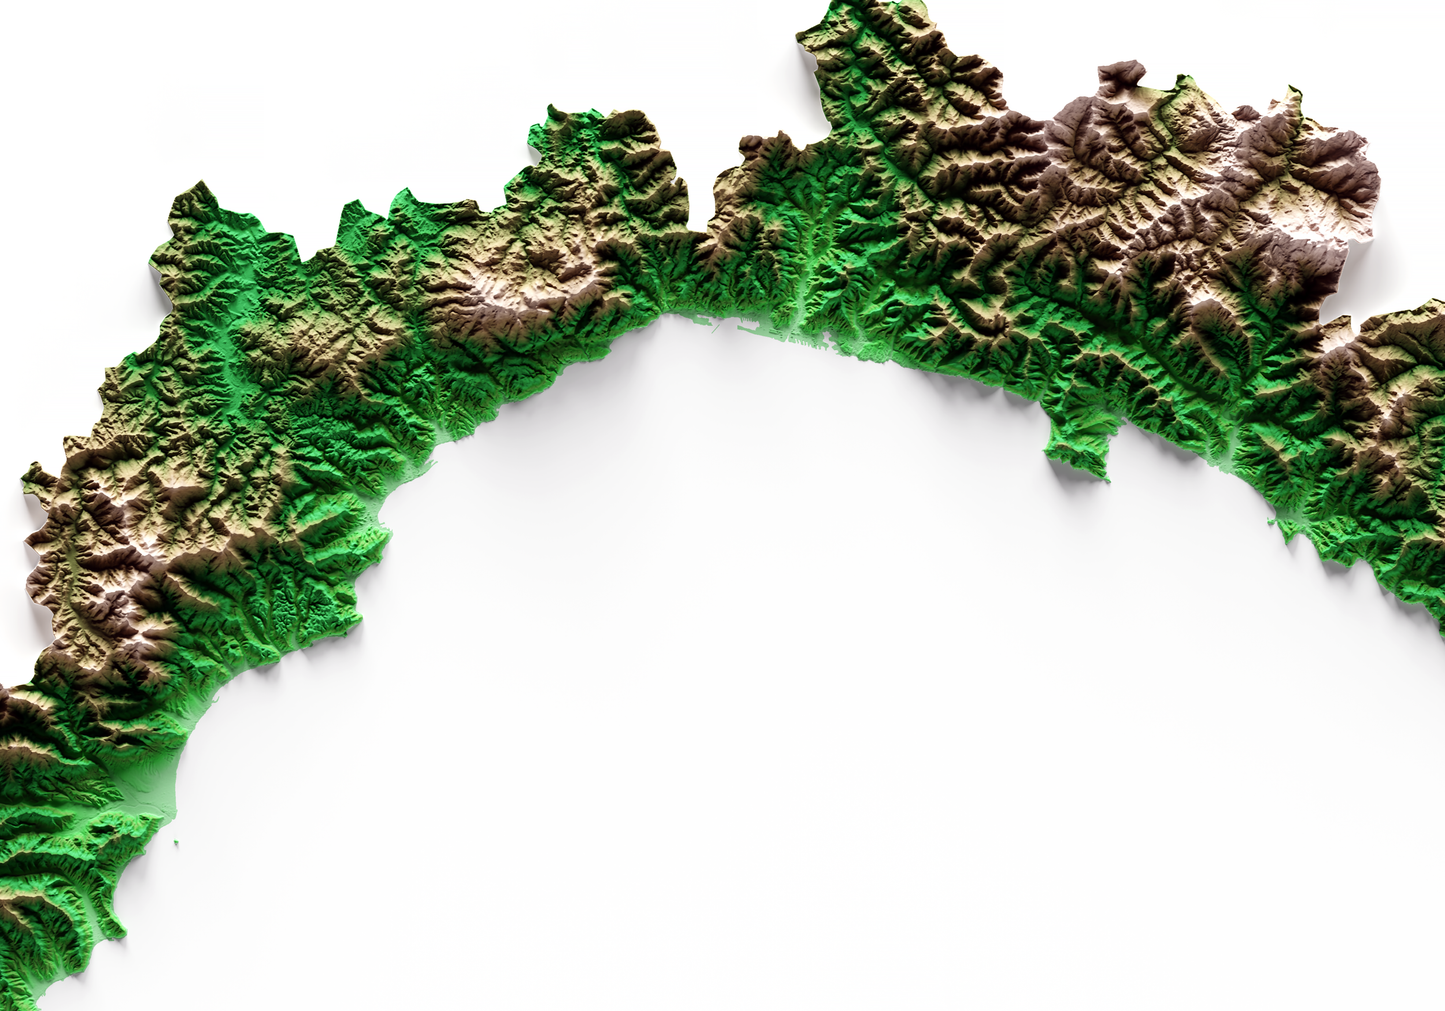 LIGURIA. Mapa de relieve clásico.